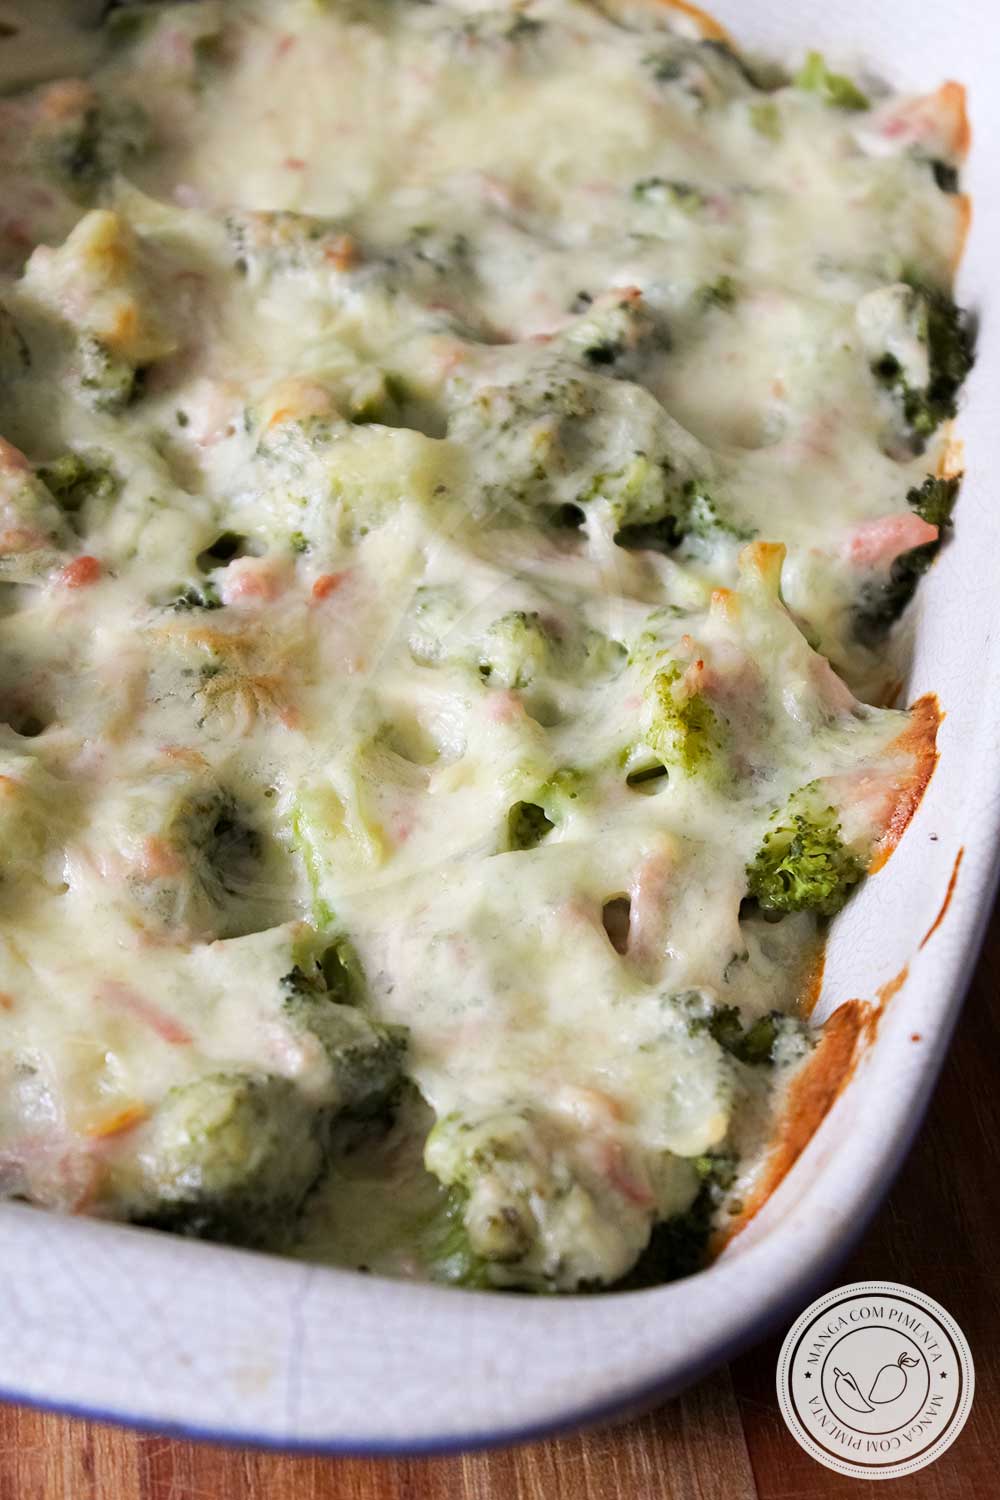 Receita de Brócolis com Queijo Gratinado, um prato delicioso e fácil de fazer para o almoço da semana!